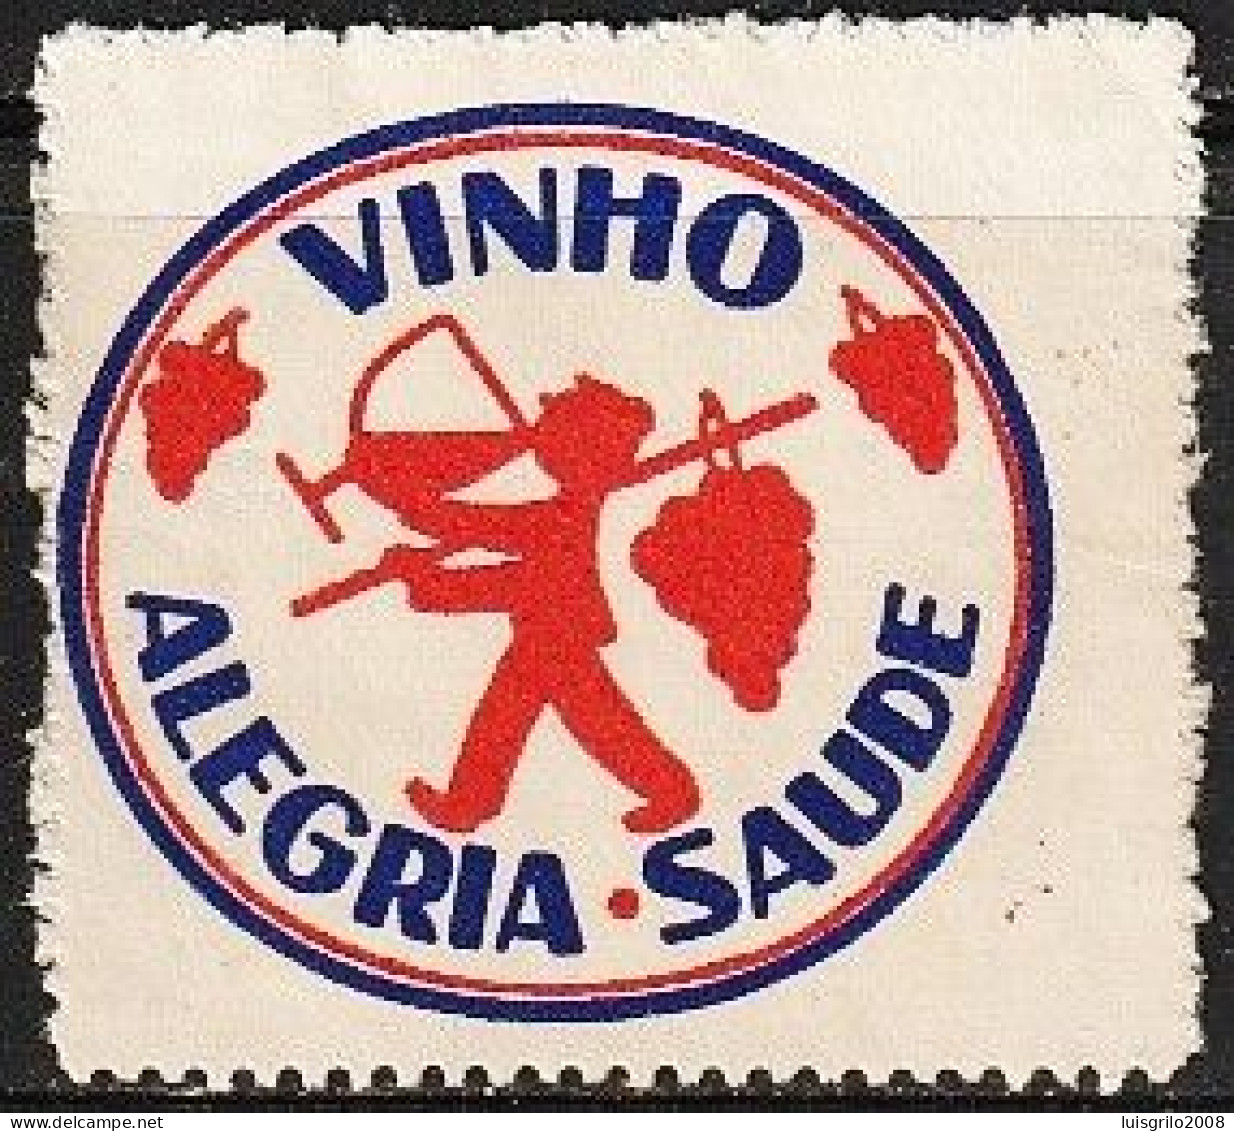 Vignette/ Vinheta, Portugal - Vinho. Alegria, Saúde -|- MNH - No Gum - Local Post Stamps